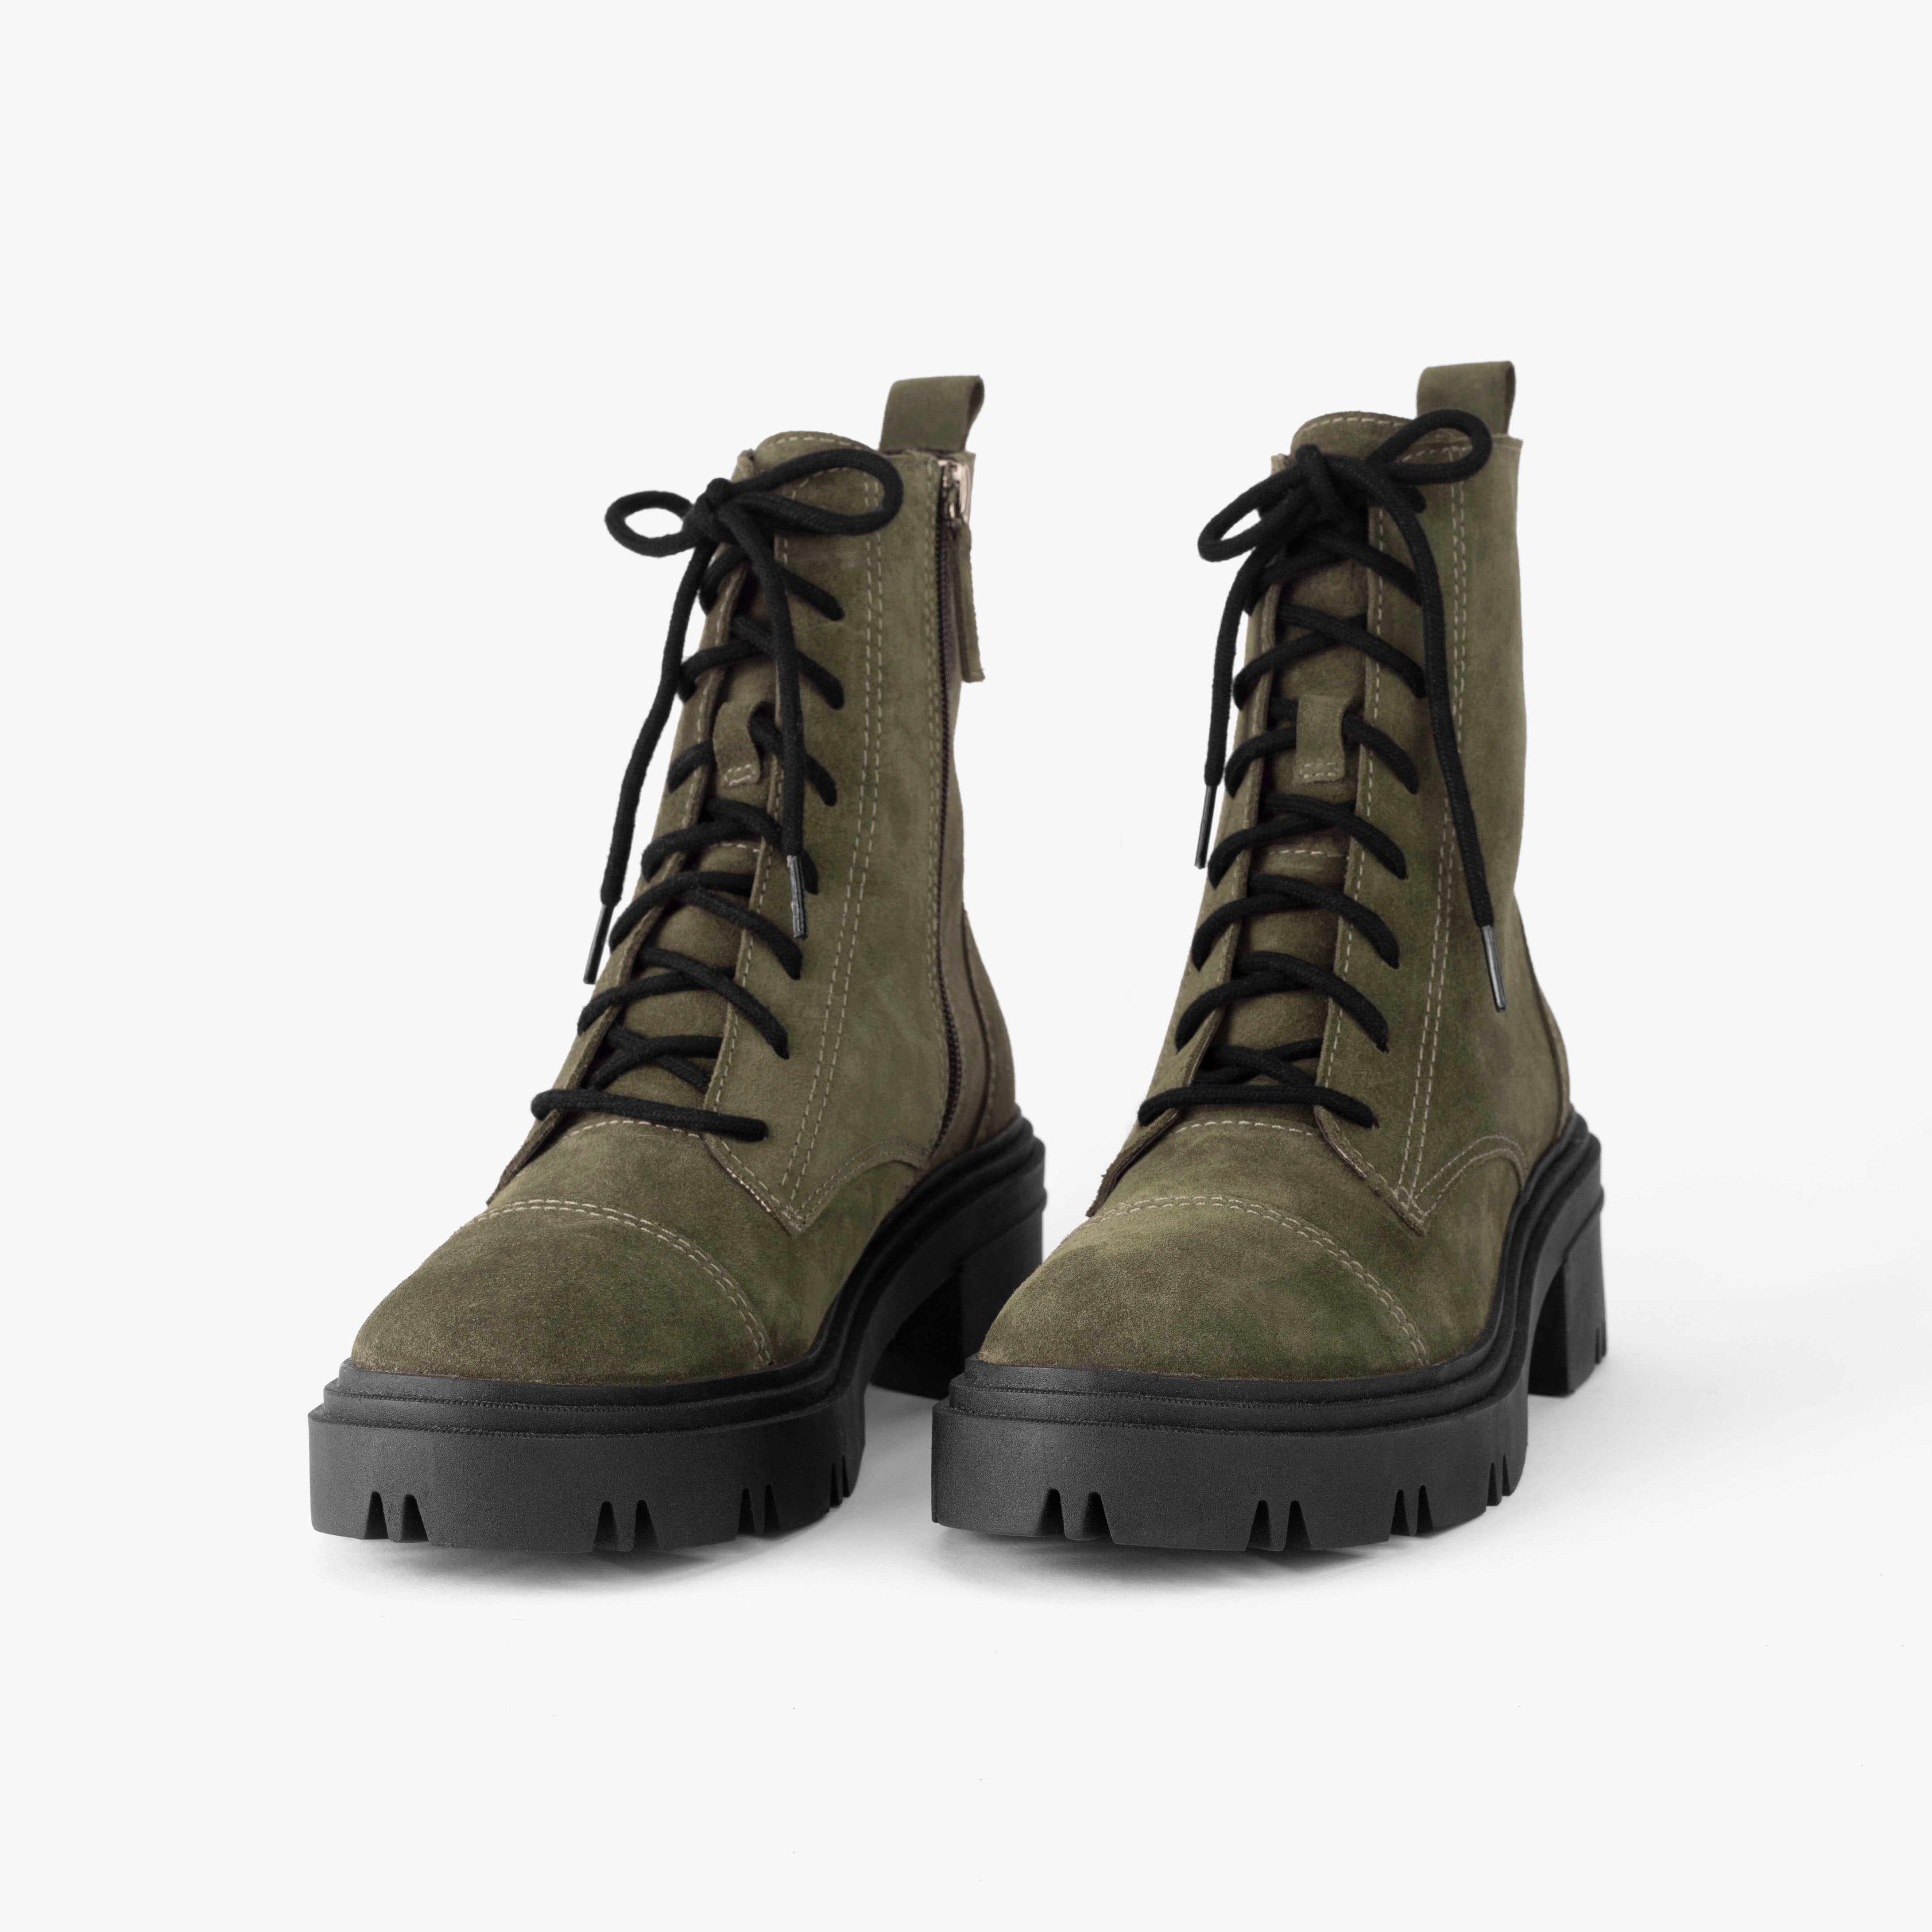 Stylish Black Punk Rock Style Chunky Heel Boots | Zapatos de tacones, Botas  zapatos, Tacones